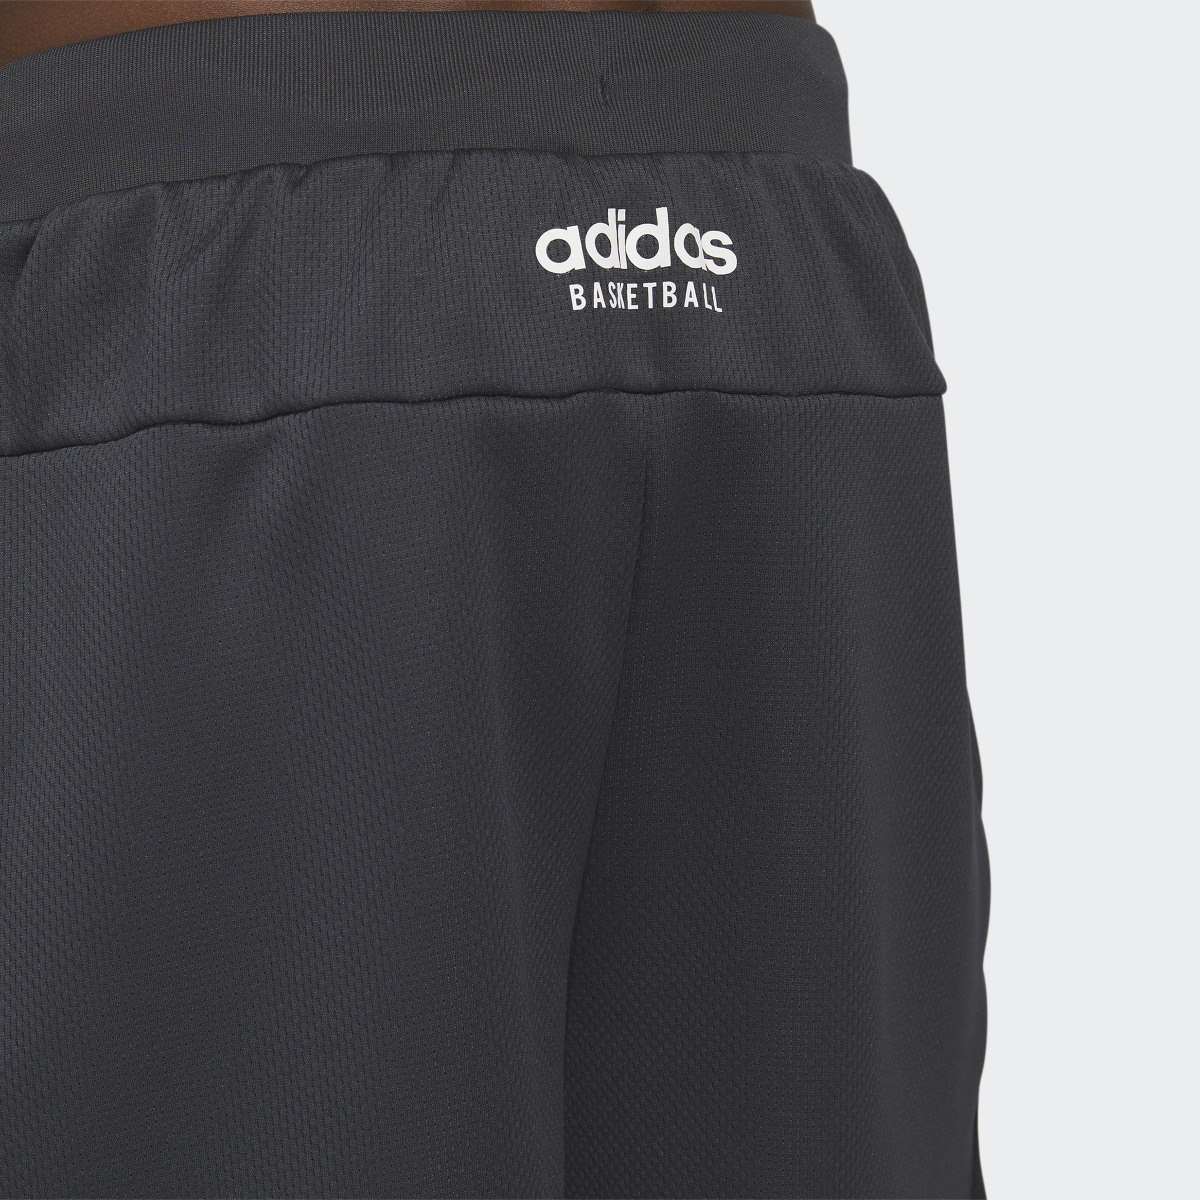 Adidas Select Shorts. 7